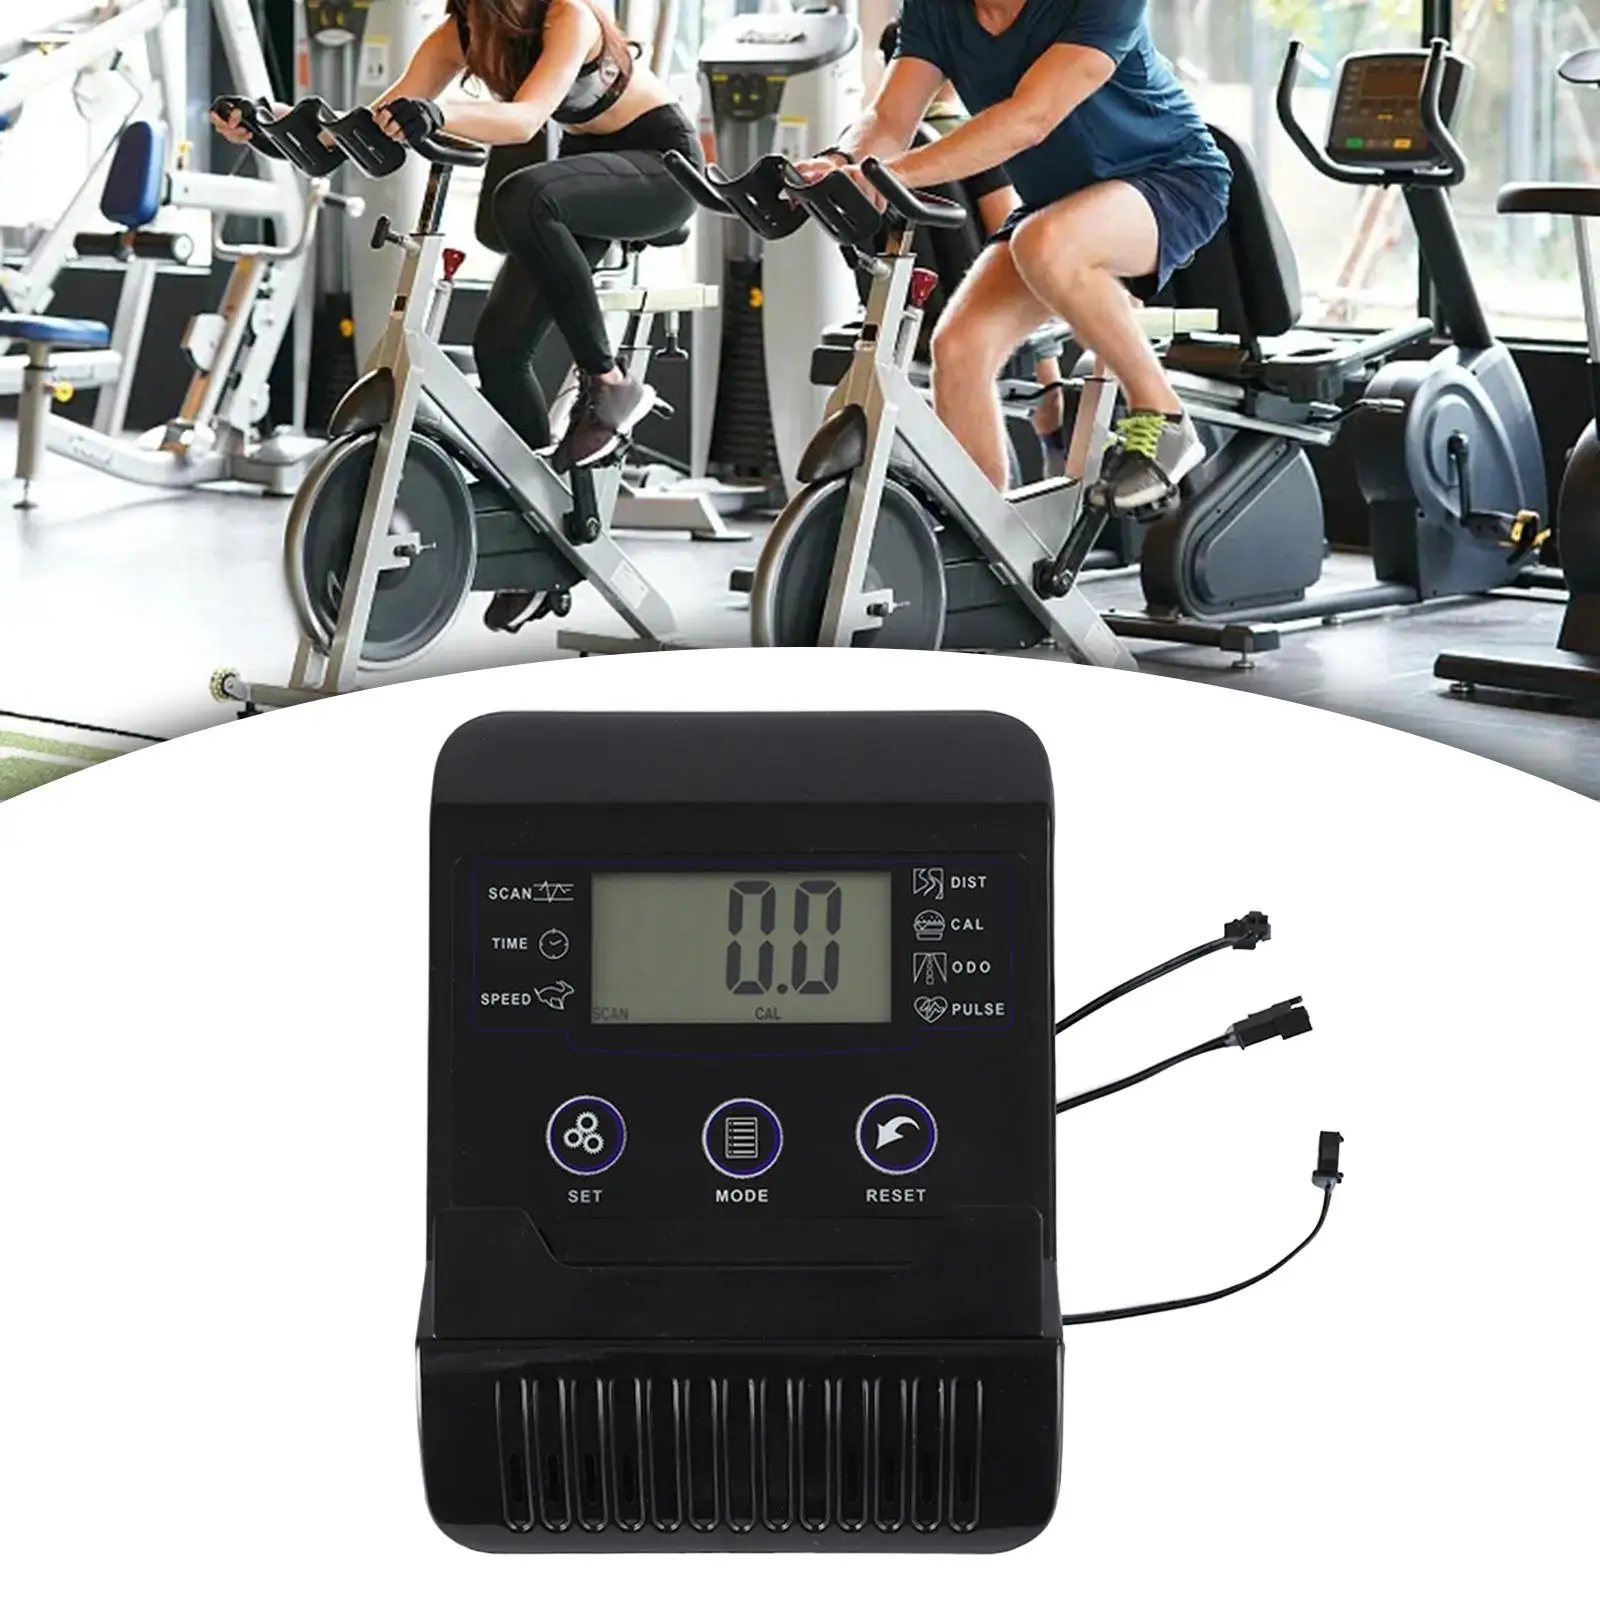 

Монитор со спидометром, гребной тренажер, монитор экрана для стационарного велосипеда, фитнес-оборудование, измеритель, тренировки, беговые дорожки для внутреннего цикла